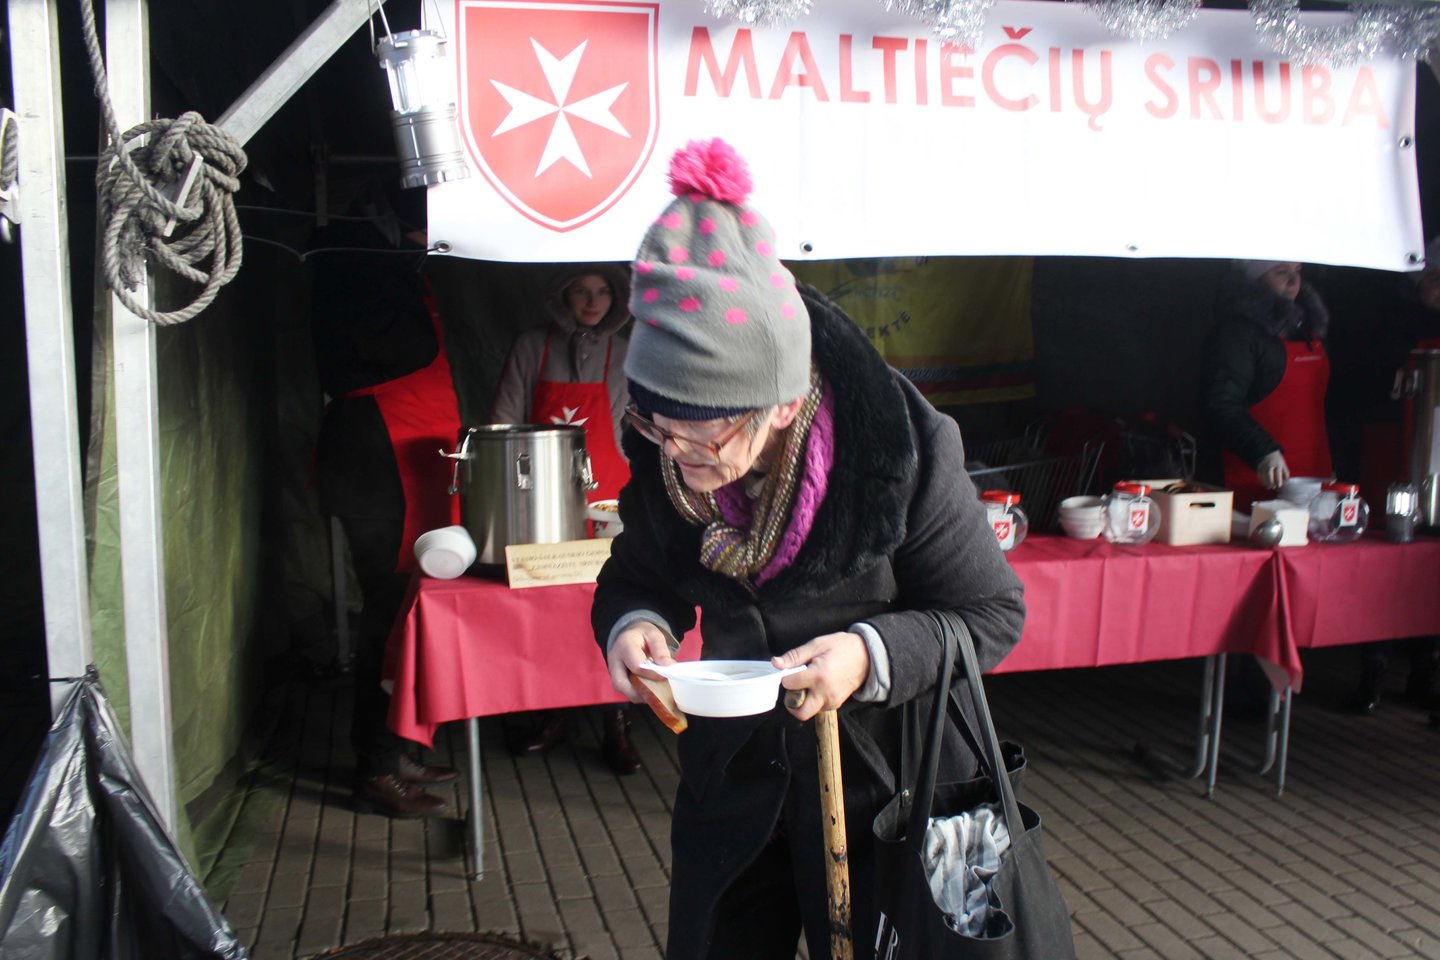  Šiemet Šiauliuose Maltiečių sriubos akcijai buvo išvirta 80 litrų trijų rūšių sriubos.<br> R.Vitkaus nuotr.